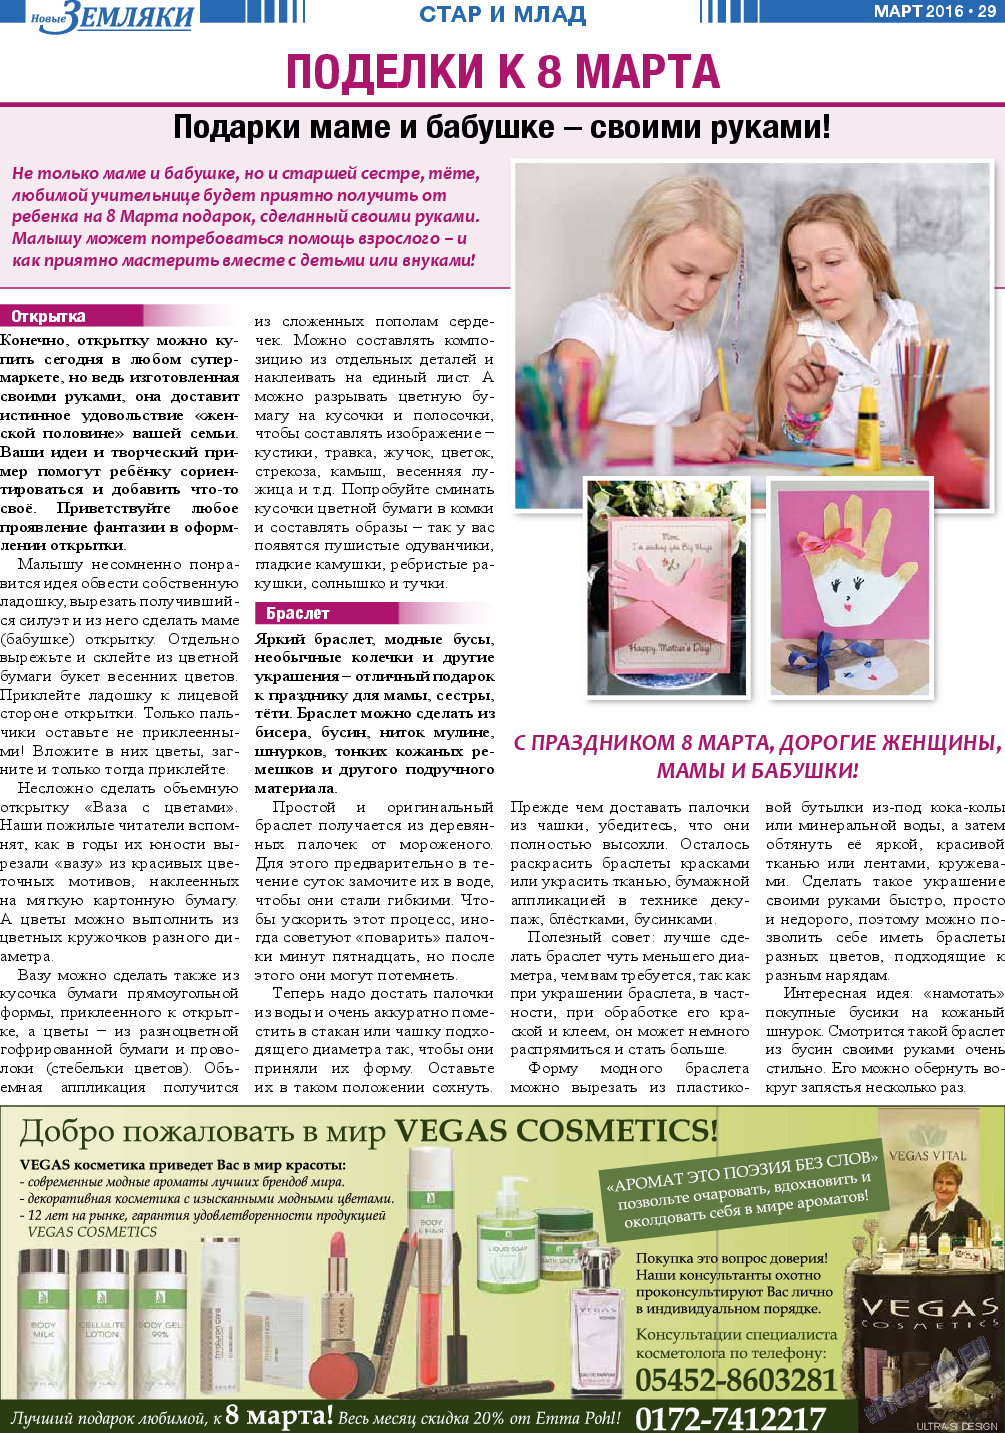 Новые Земляки, газета. 2016 №3 стр.29